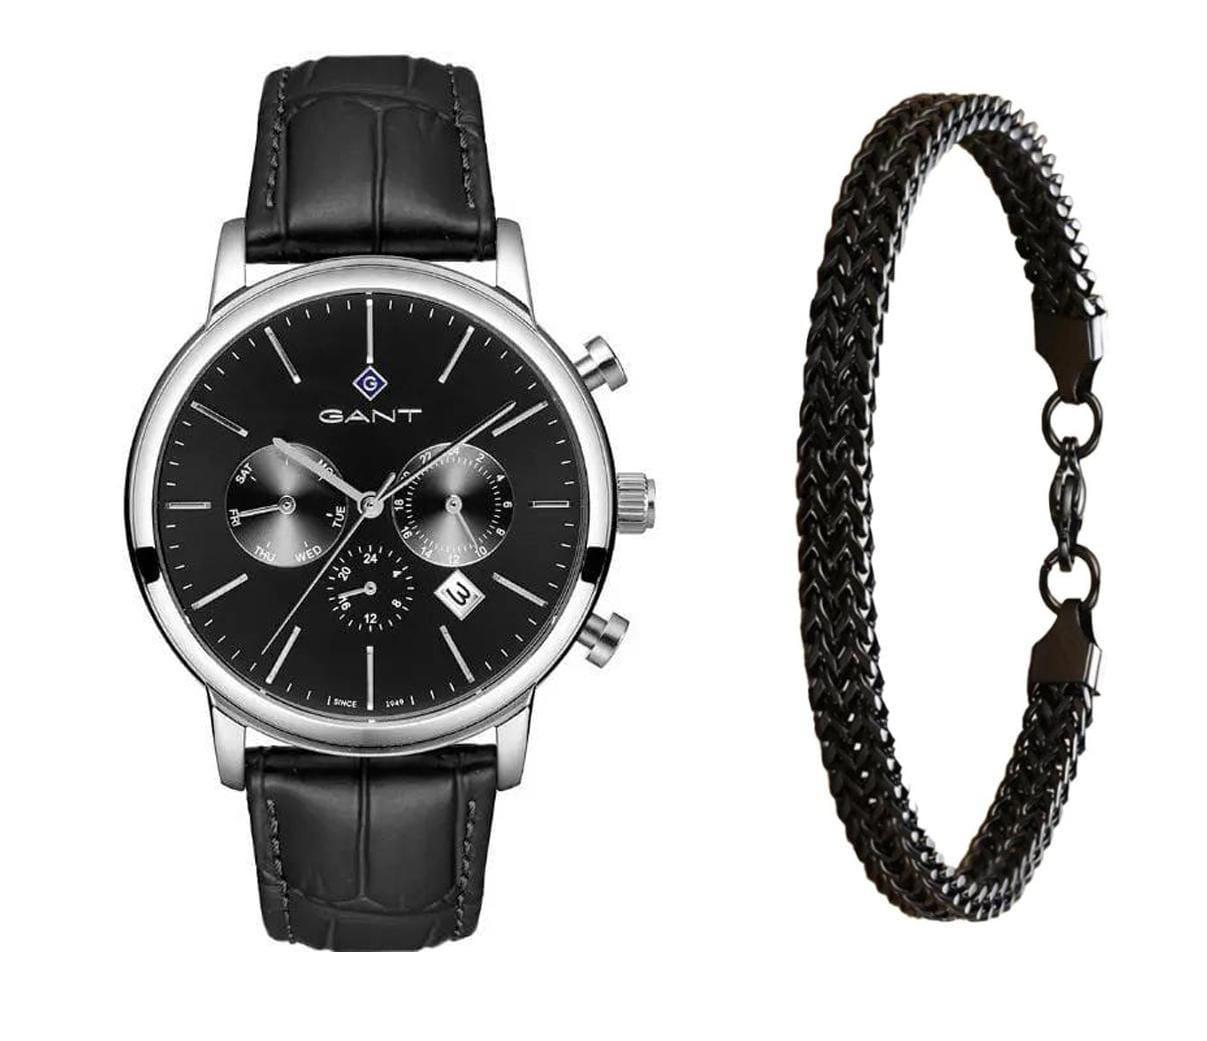 שעון יד אנלוגי לגבר gant g132006 גאנט עם צמיד חוליות שחור